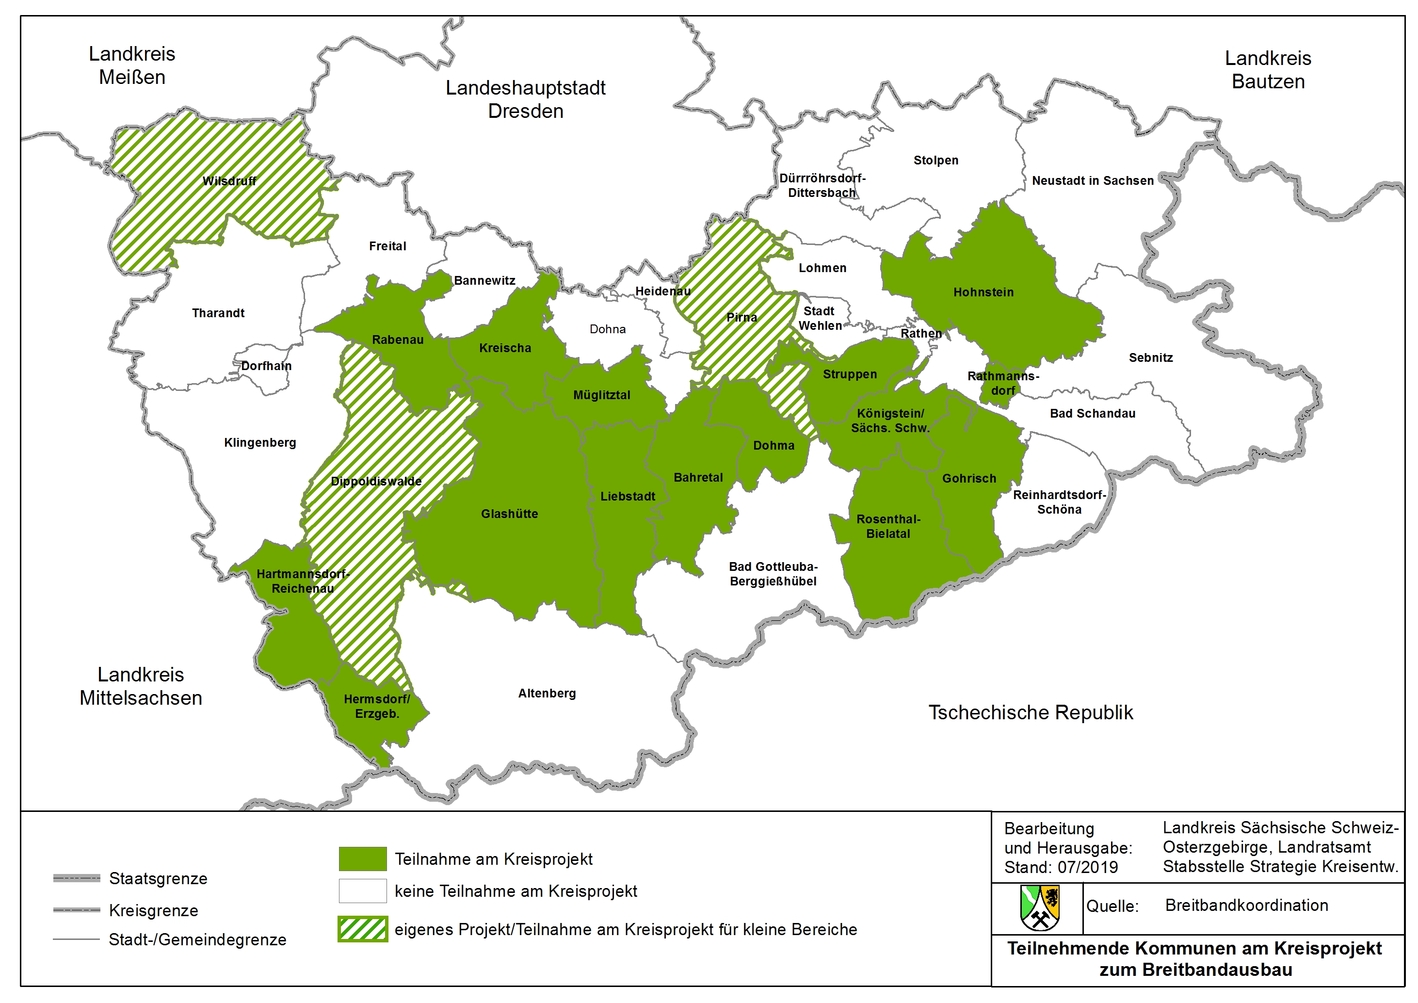 19 der 36 Kommunen im Landkreis beteiligen sich dabei entsprechend eines jeweiligen Stadt- / Gemeinderatsbeschluss am Kreisprojekt